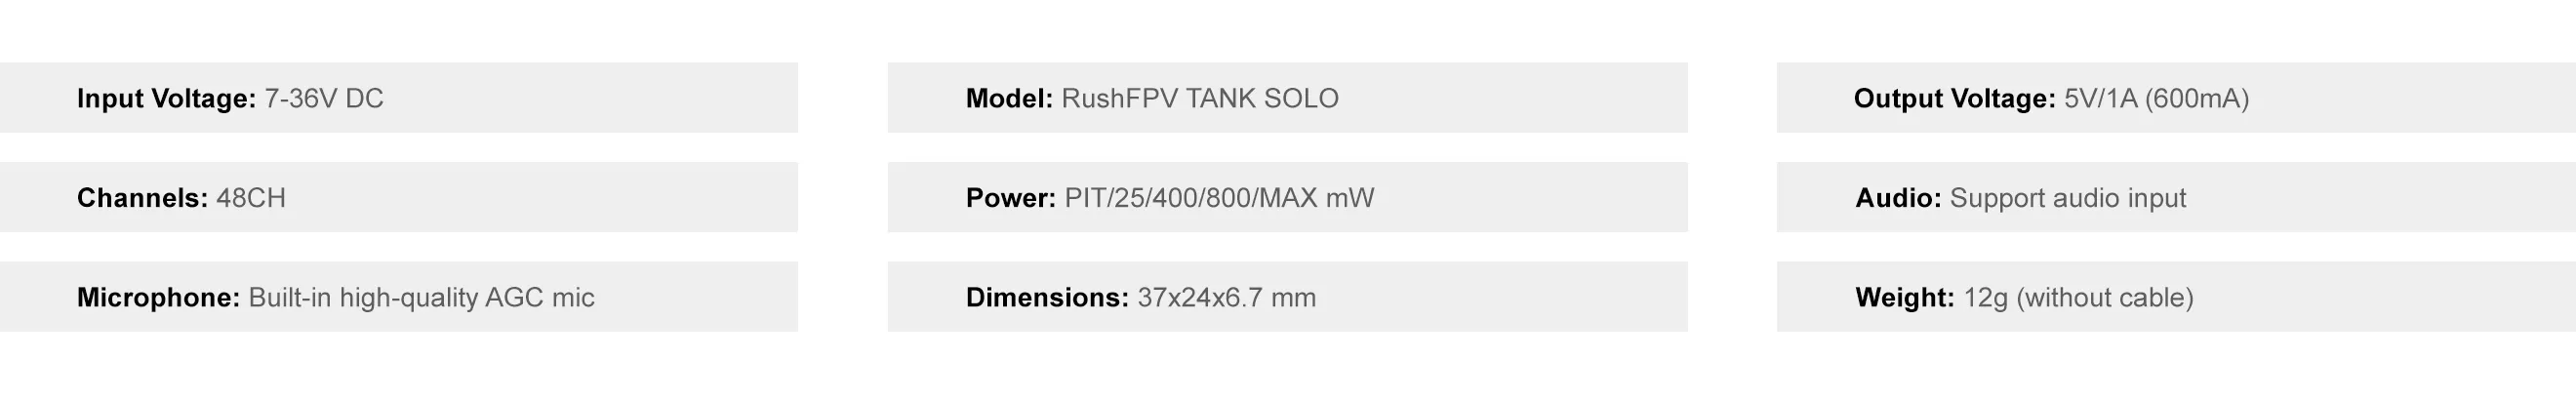 rushfpv-tank-solo-vtx